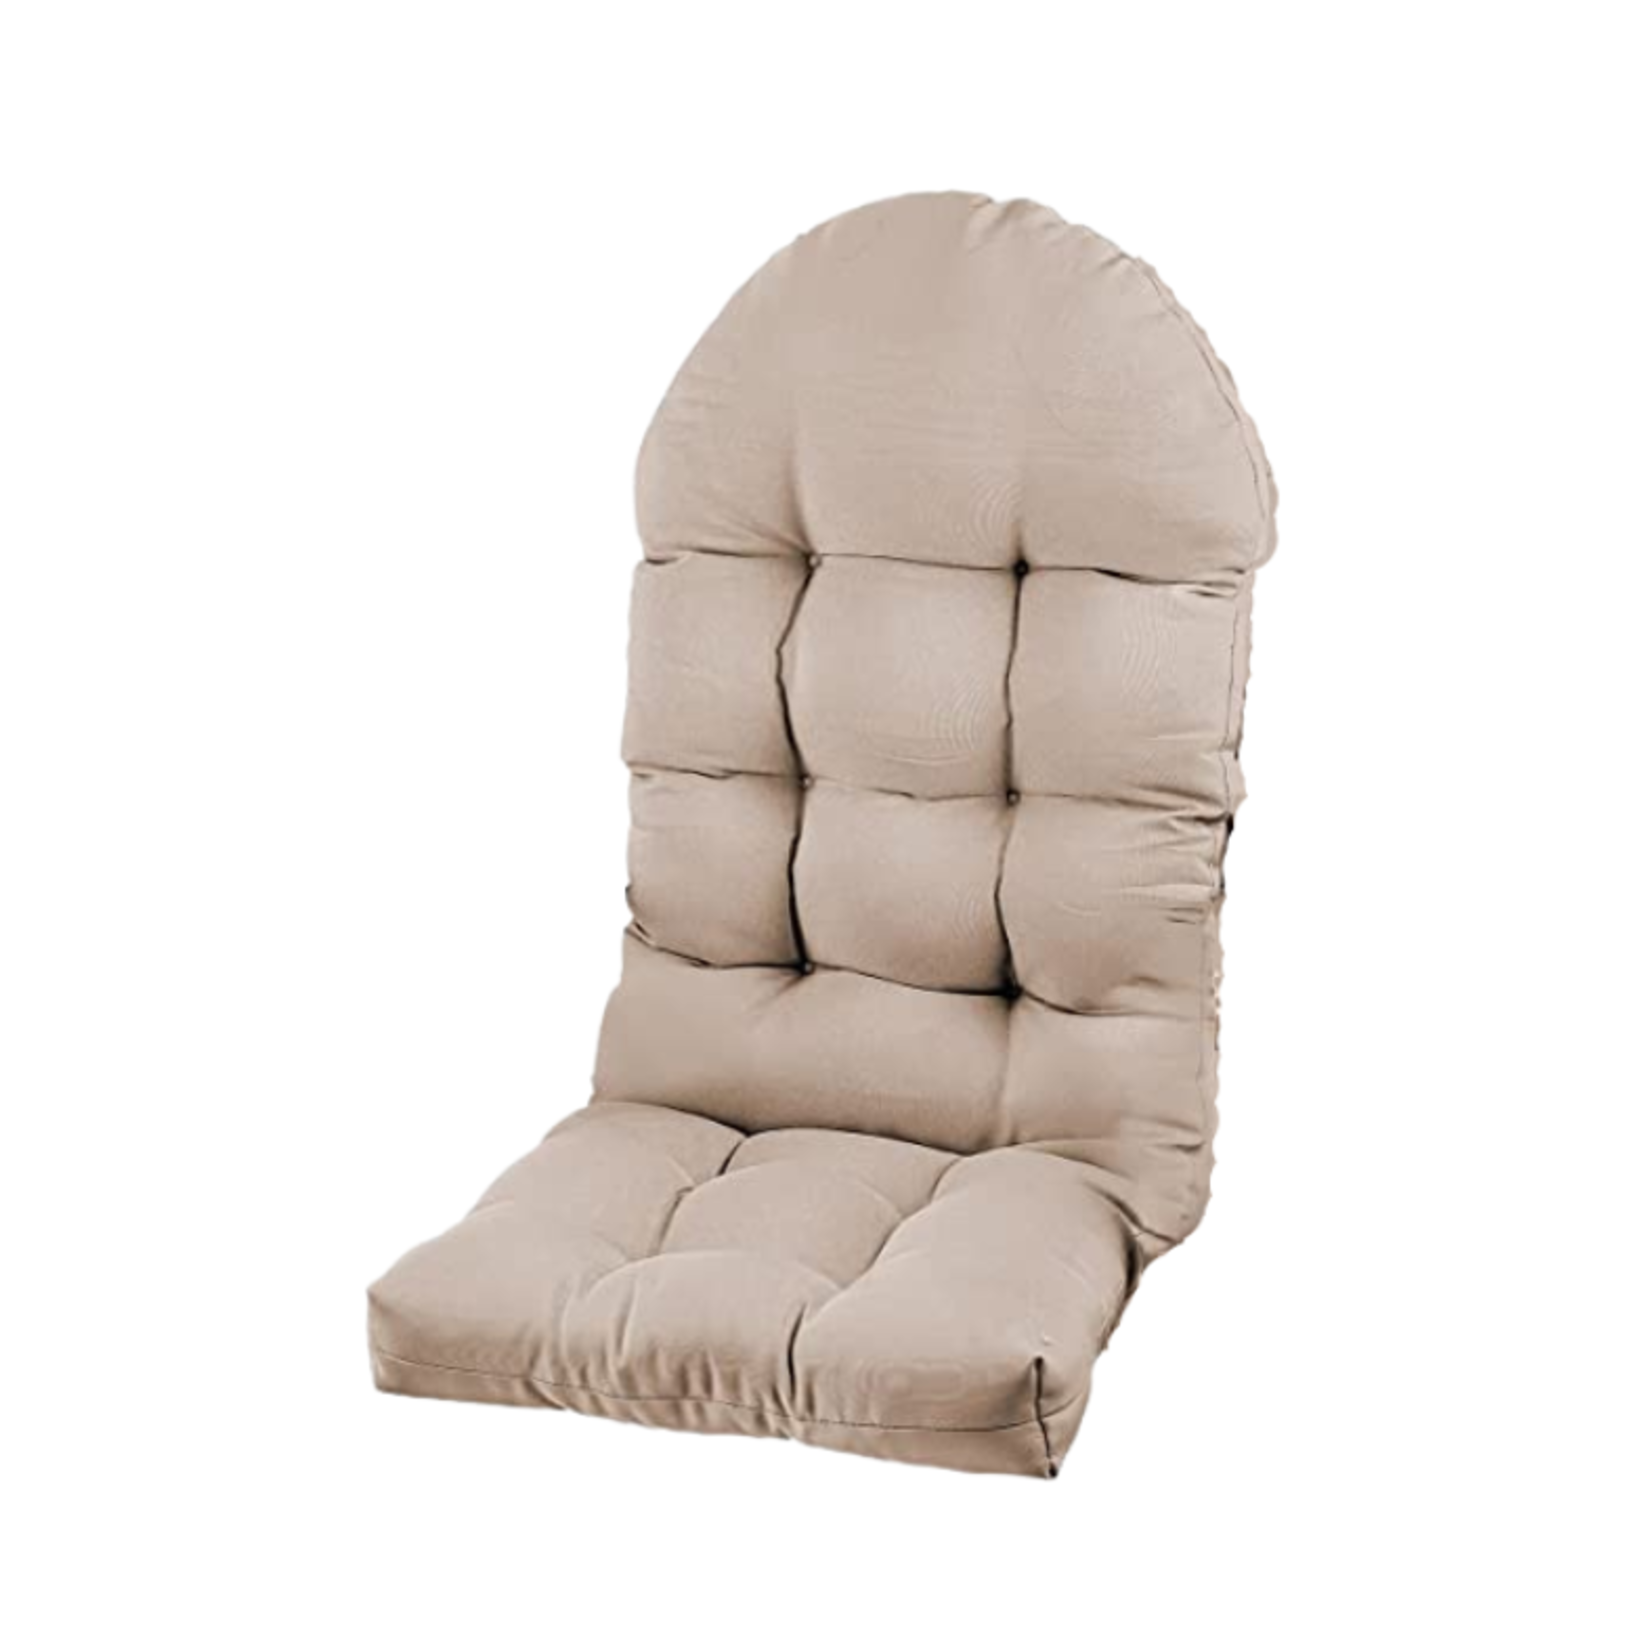 PNP Hwjiaju Chair Cushion- High Back- Beige